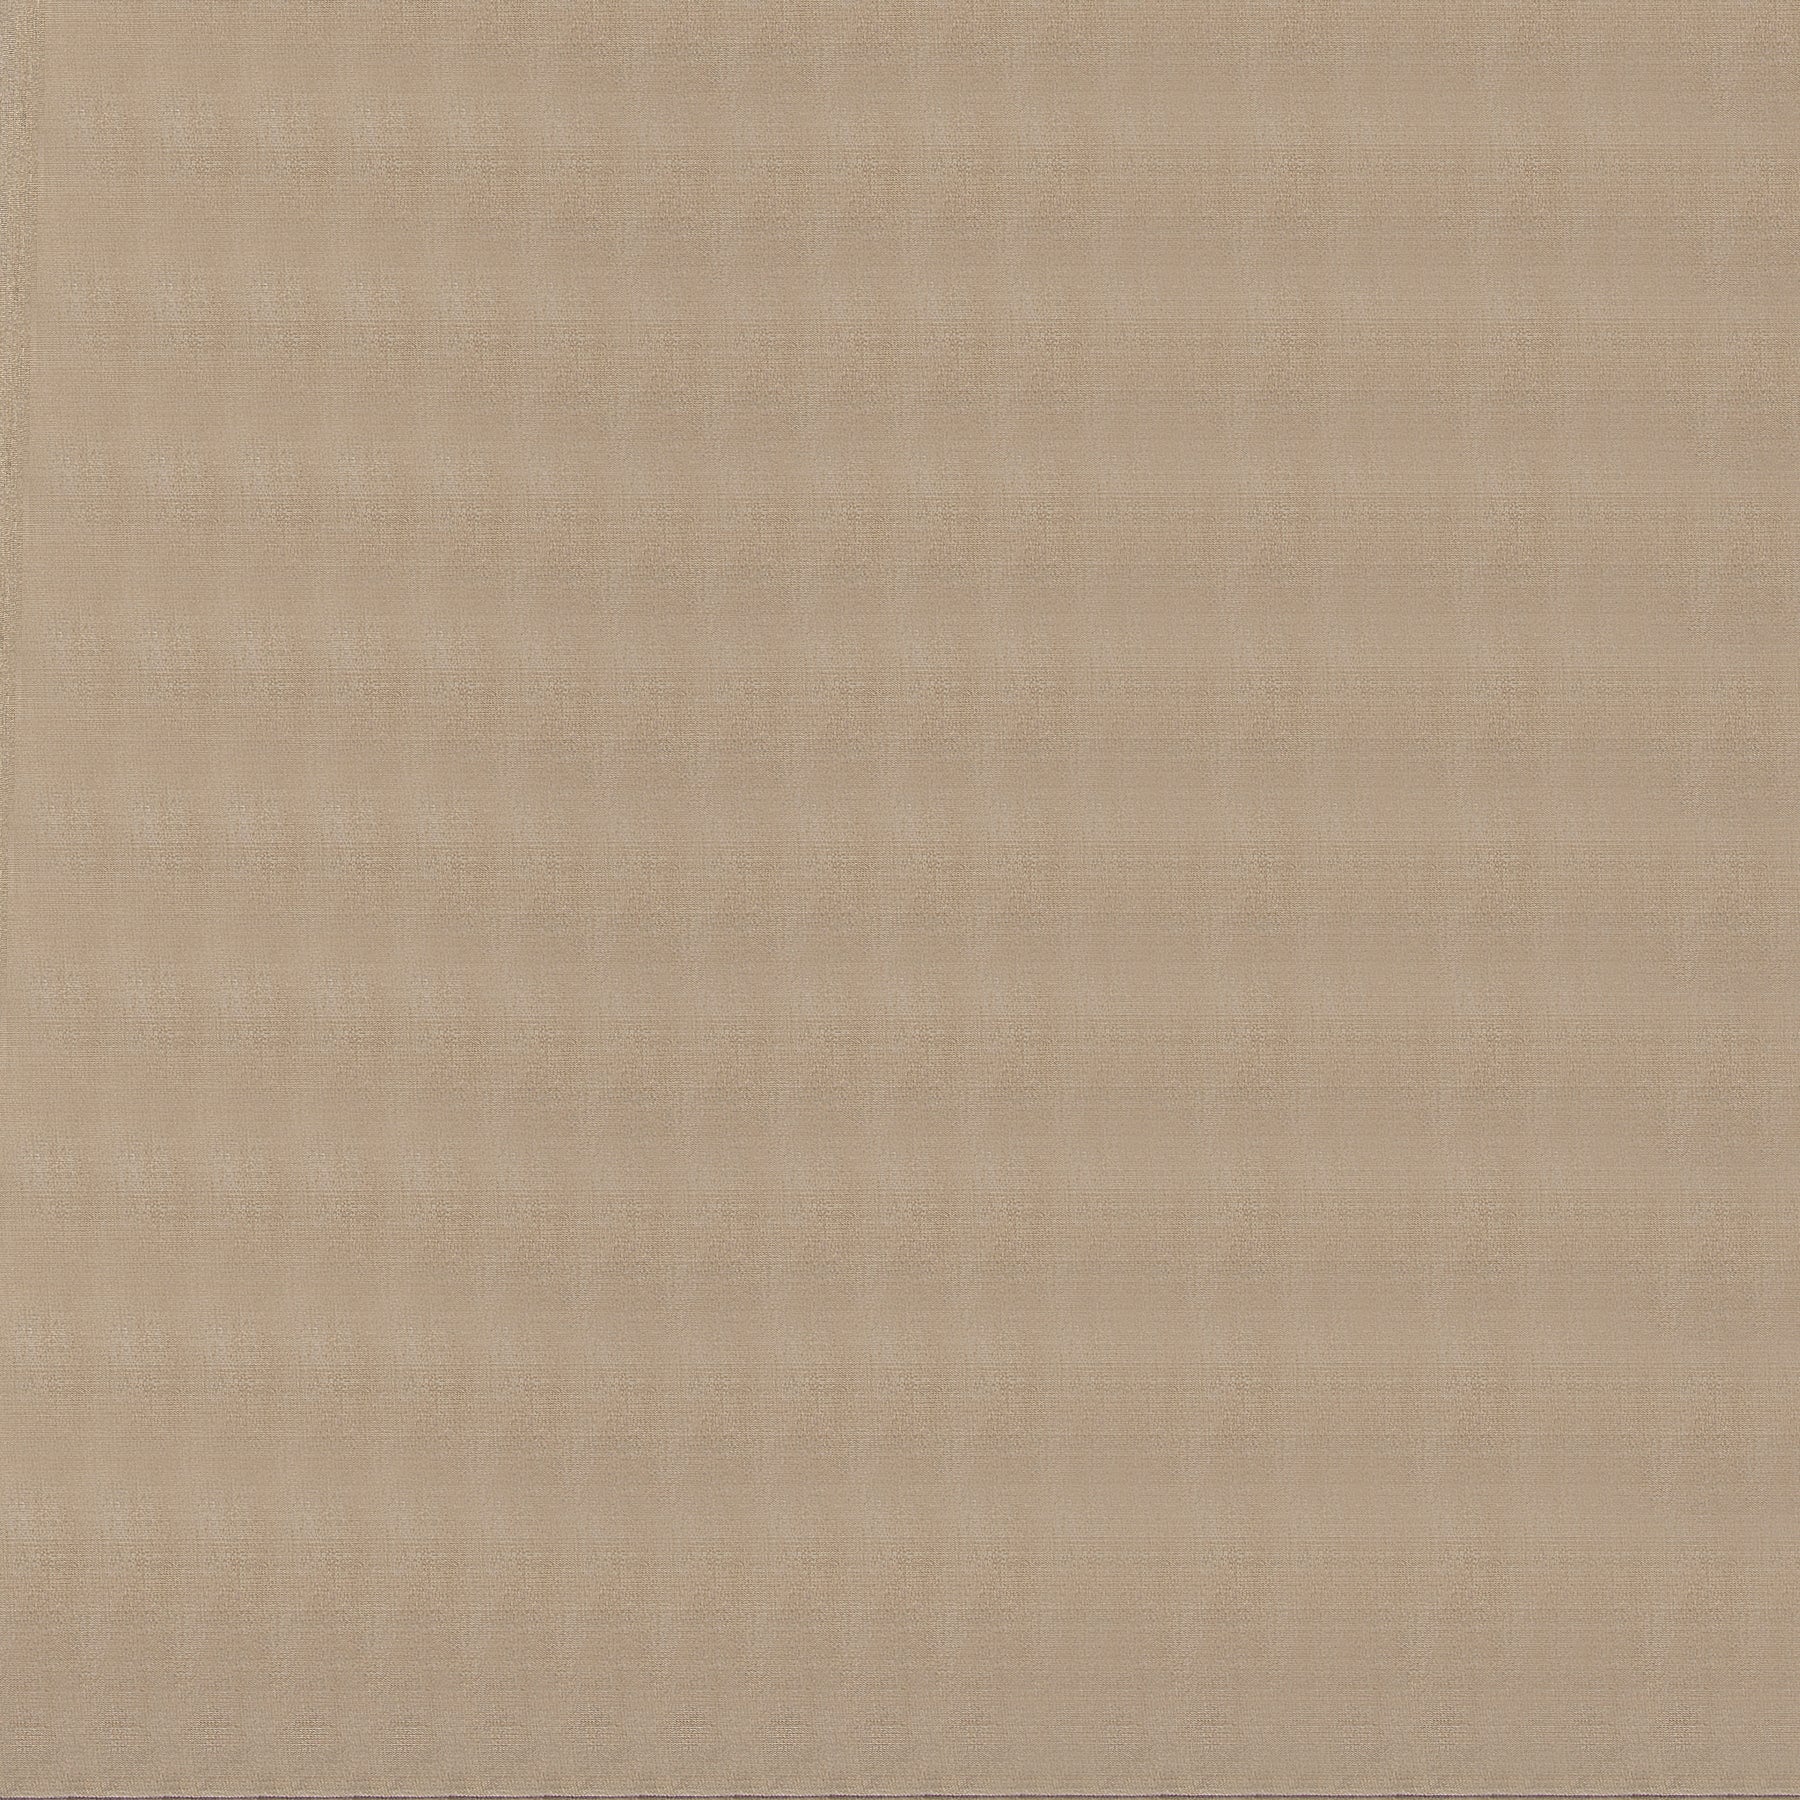 Kanakavalli Tissue Silk Blouse Length 23-201-HB002-04667 - Full View